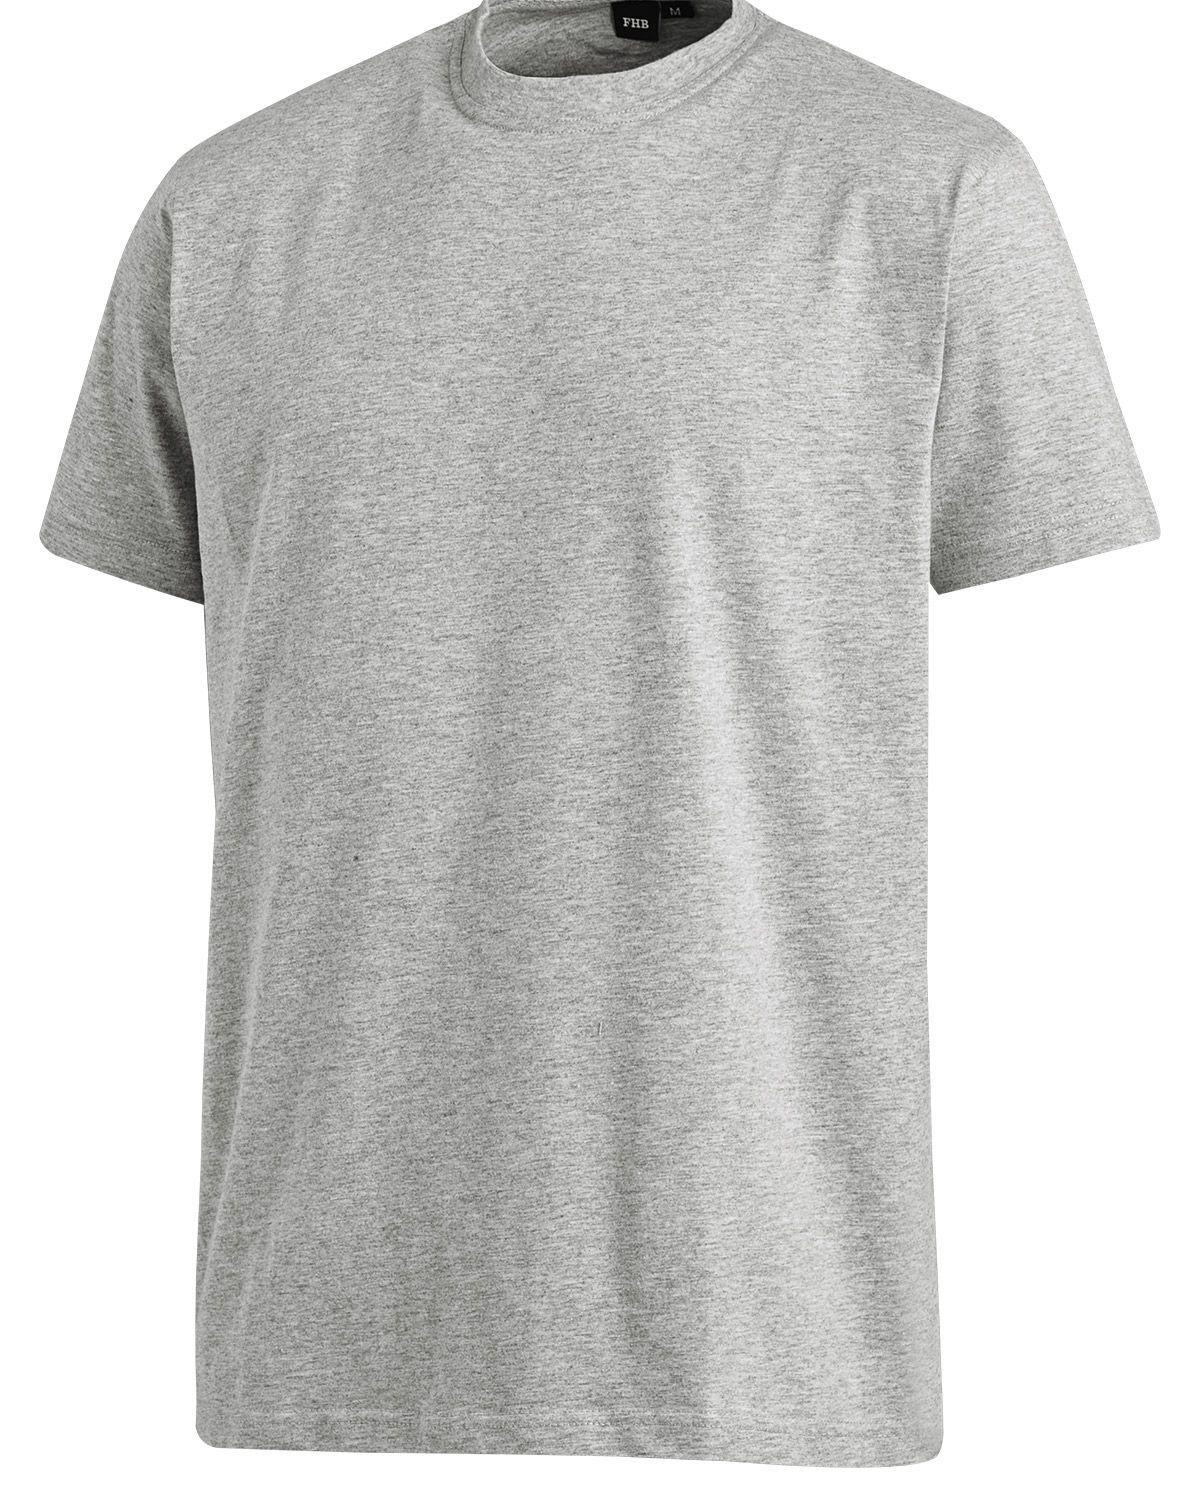 FHB T-Shirt - Jens (Grå, 5XL)